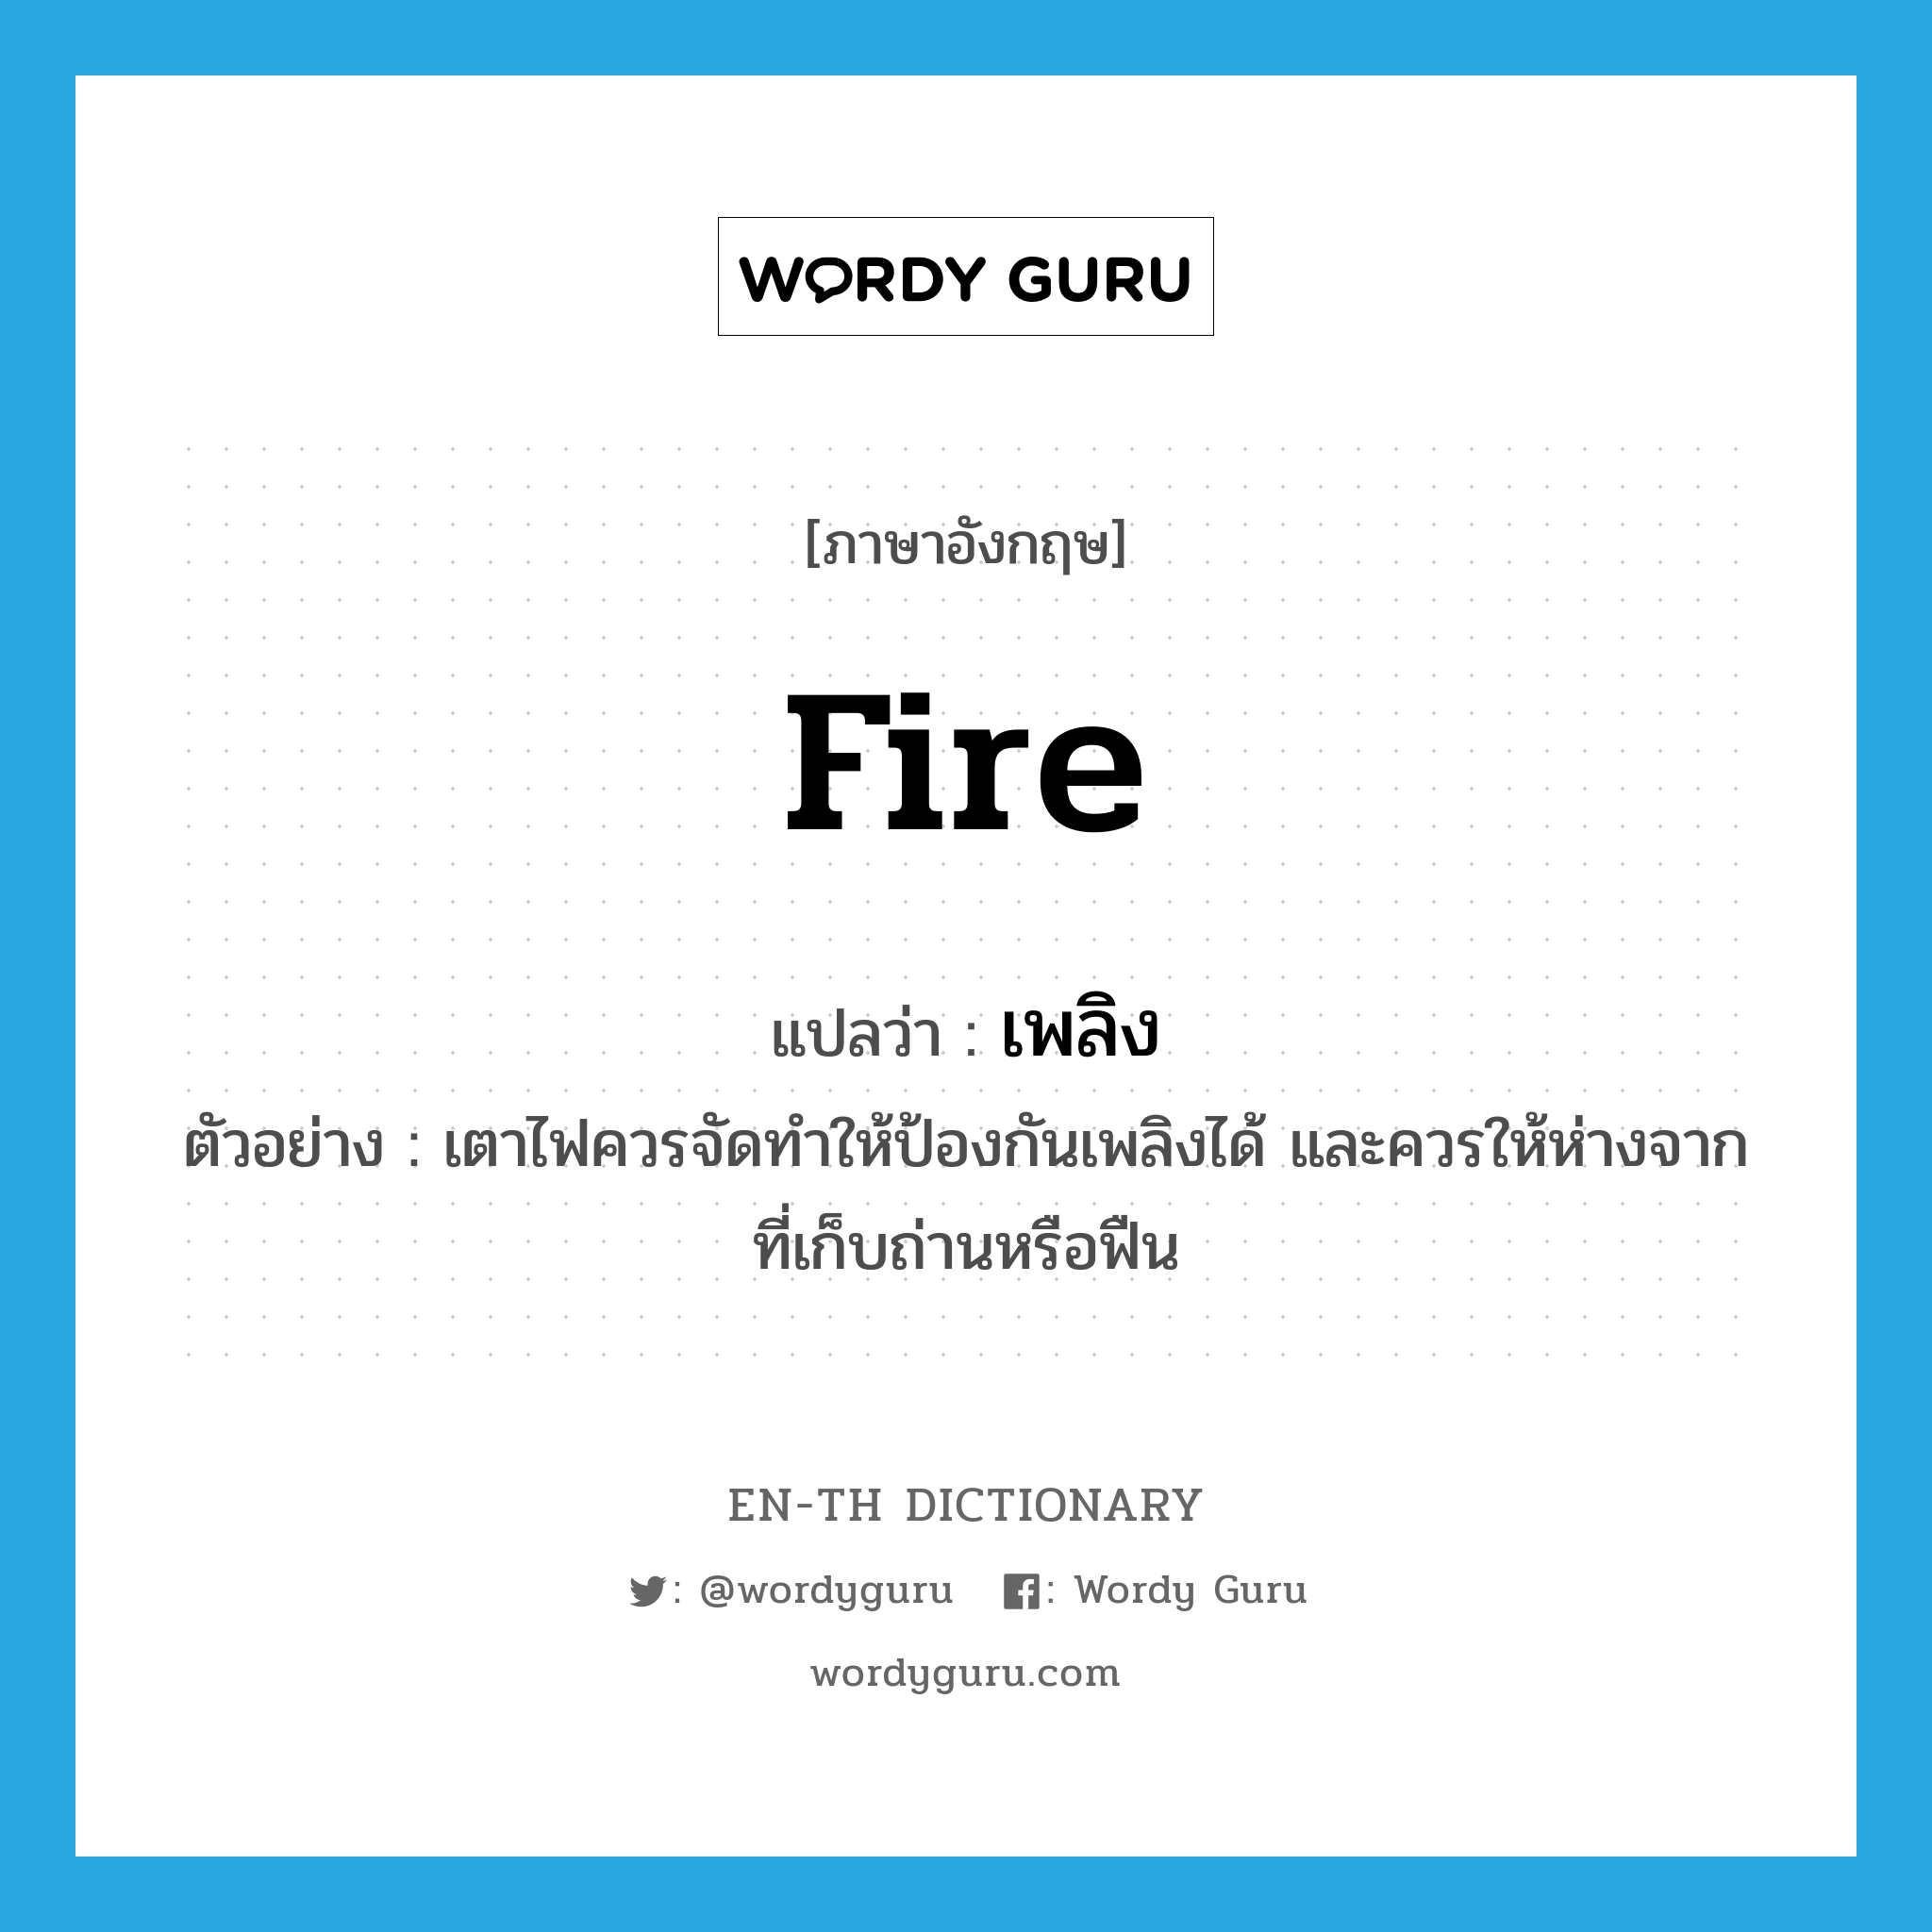 fire แปลว่า?, คำศัพท์ภาษาอังกฤษ fire แปลว่า เพลิง ประเภท N ตัวอย่าง เตาไฟควรจัดทำให้ป้องกันเพลิงได้ และควรให้ห่างจากที่เก็บถ่านหรือฟืน หมวด N